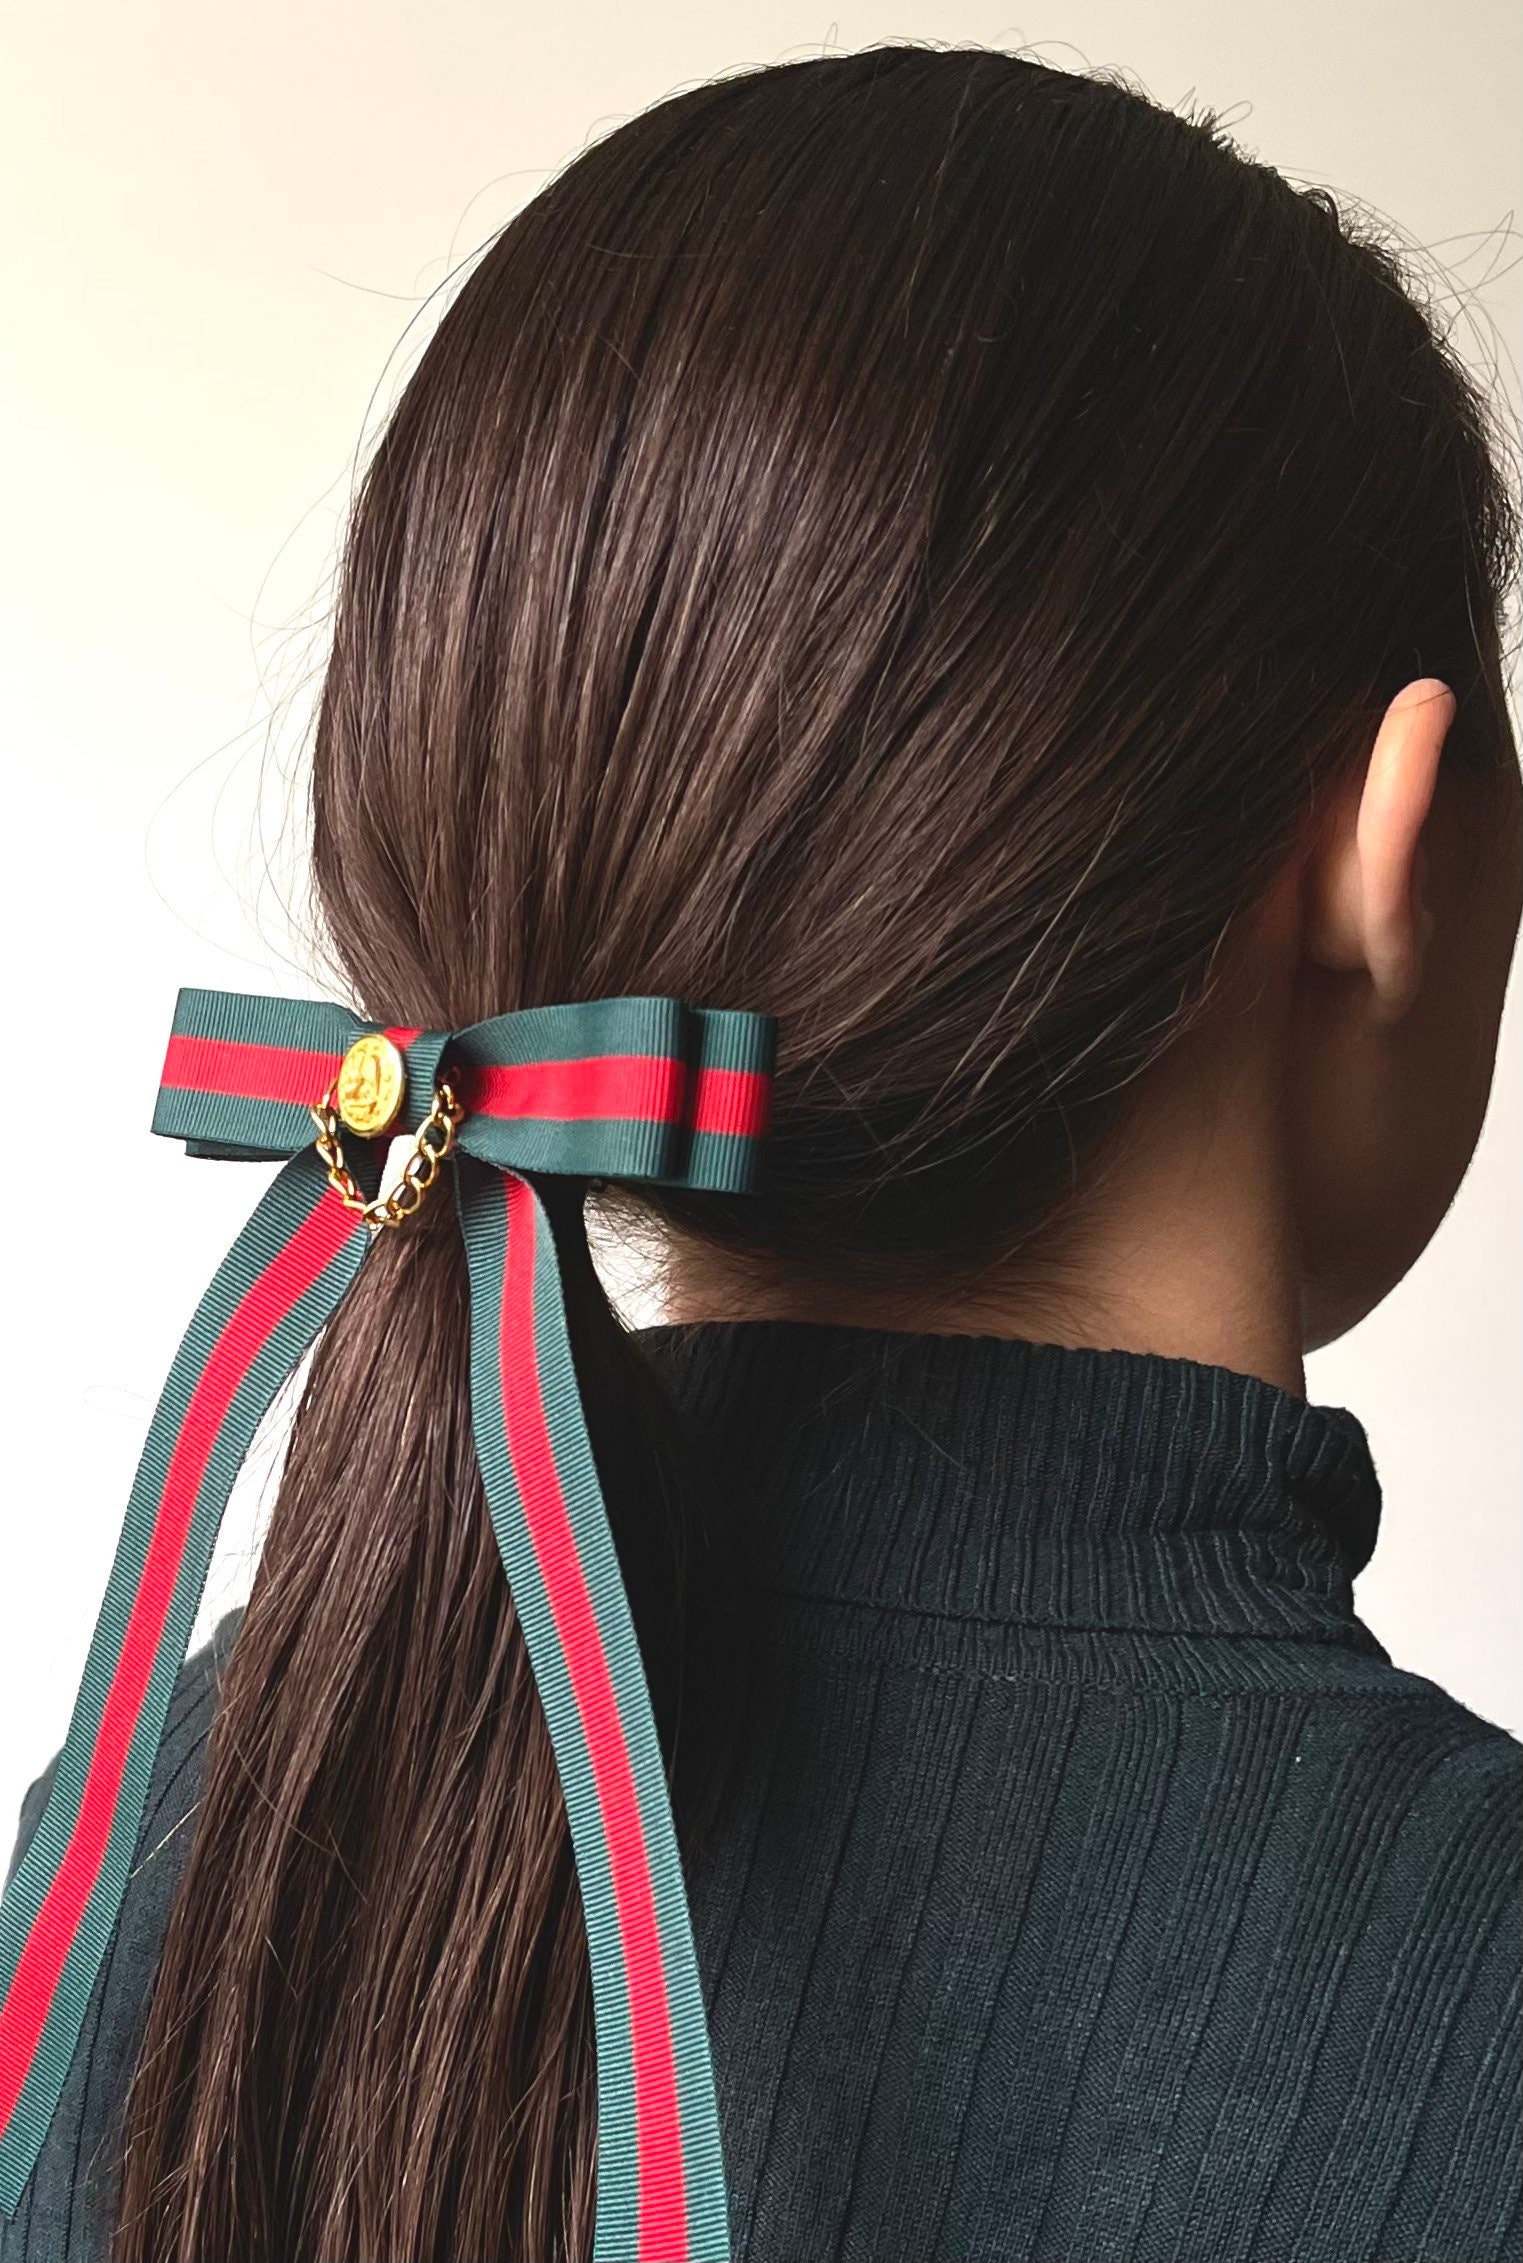 Buy Designer hair bows, Gucci inspired hair bow, LV inspired hair bows,  Chanel inspired Hair bow, Online at desertcartINDIA